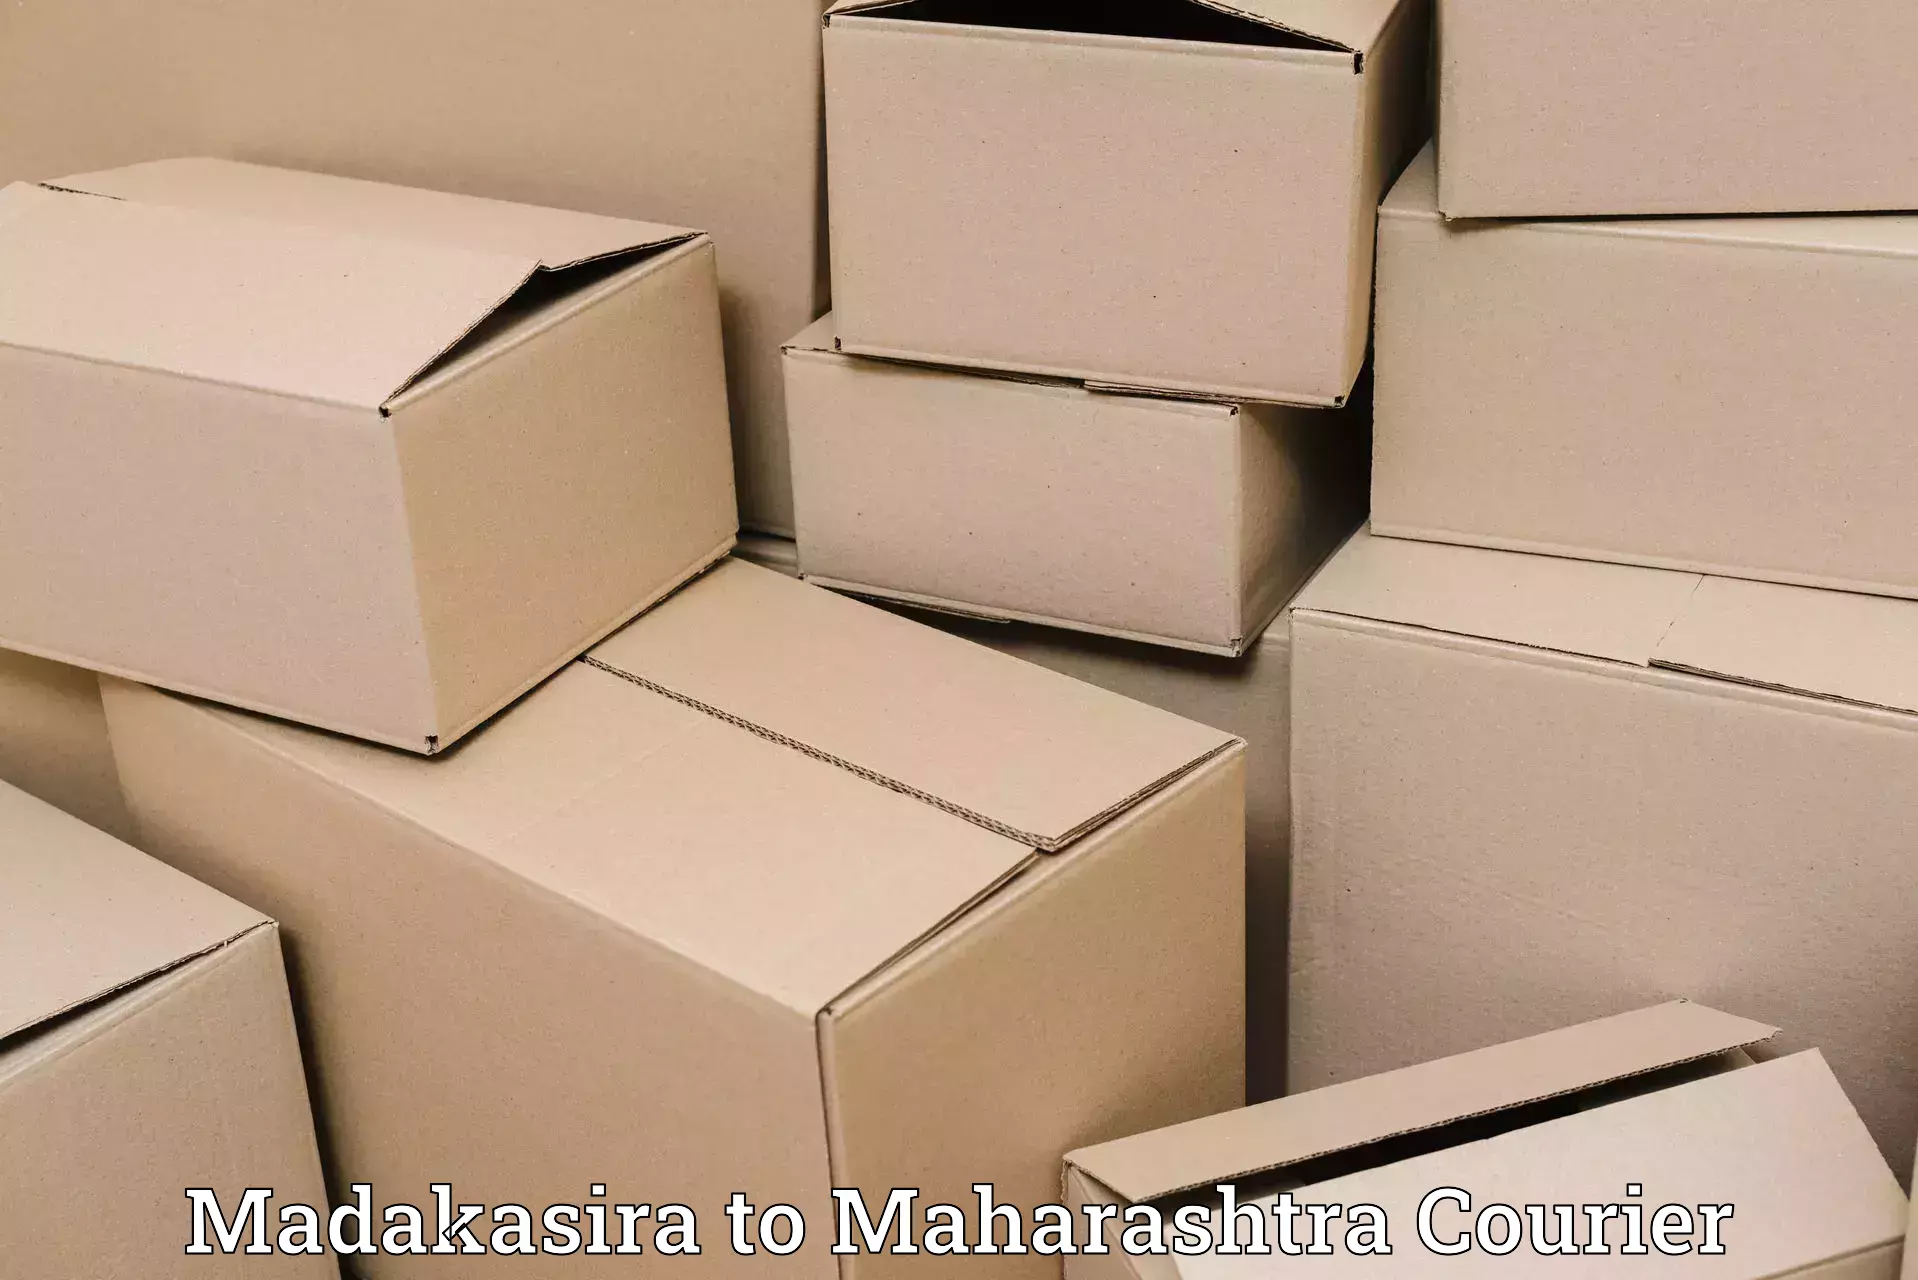 Global shipping networks Madakasira to Umred